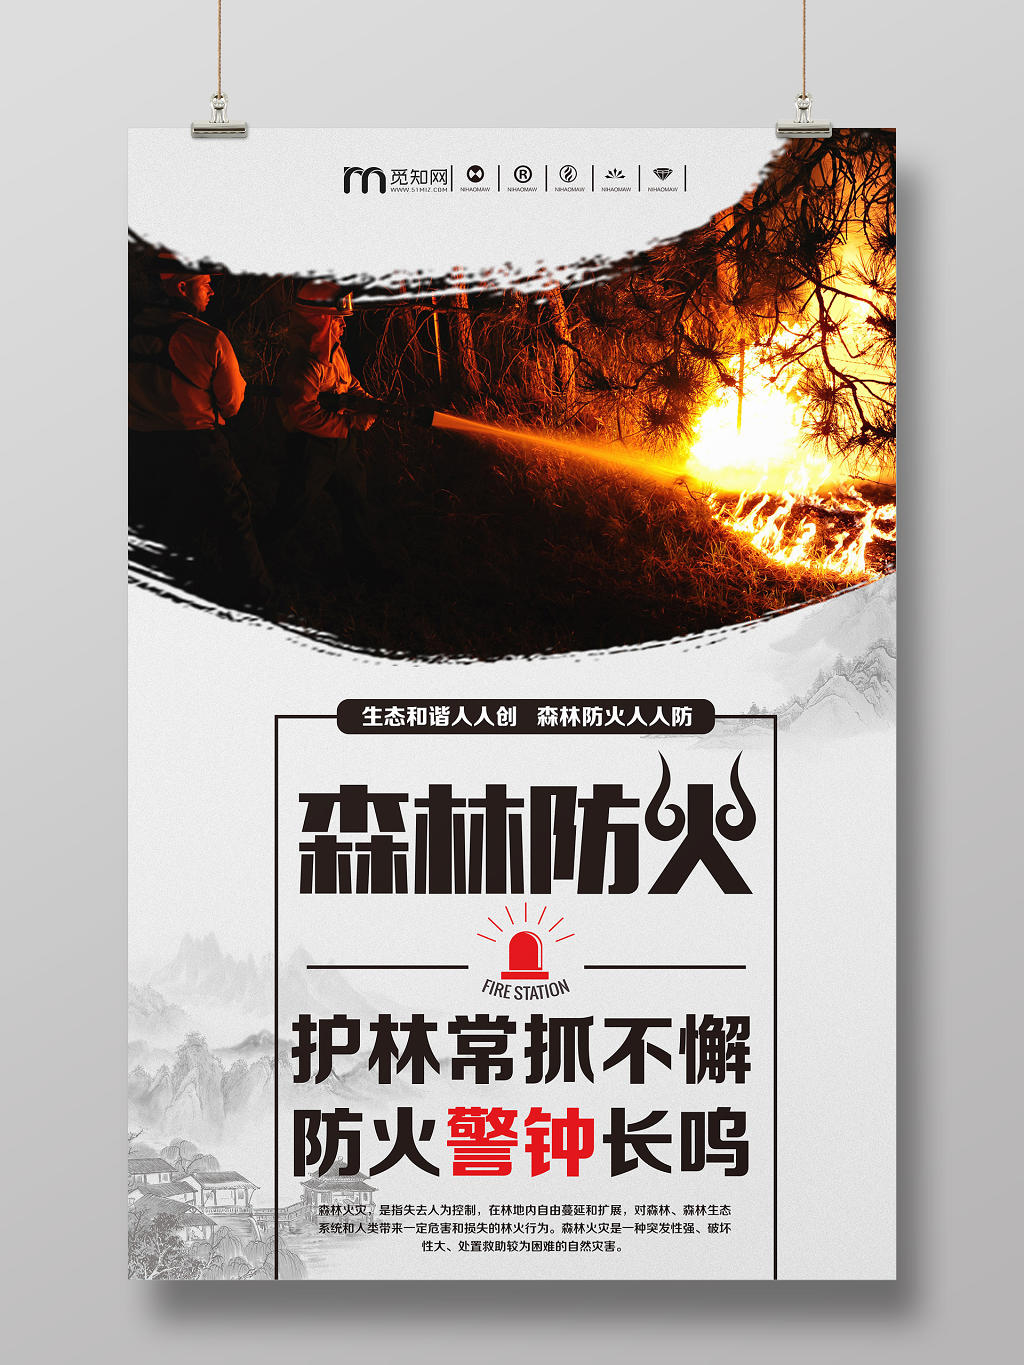 简约中国风安全防火知识森林防火消防公益宣传海报